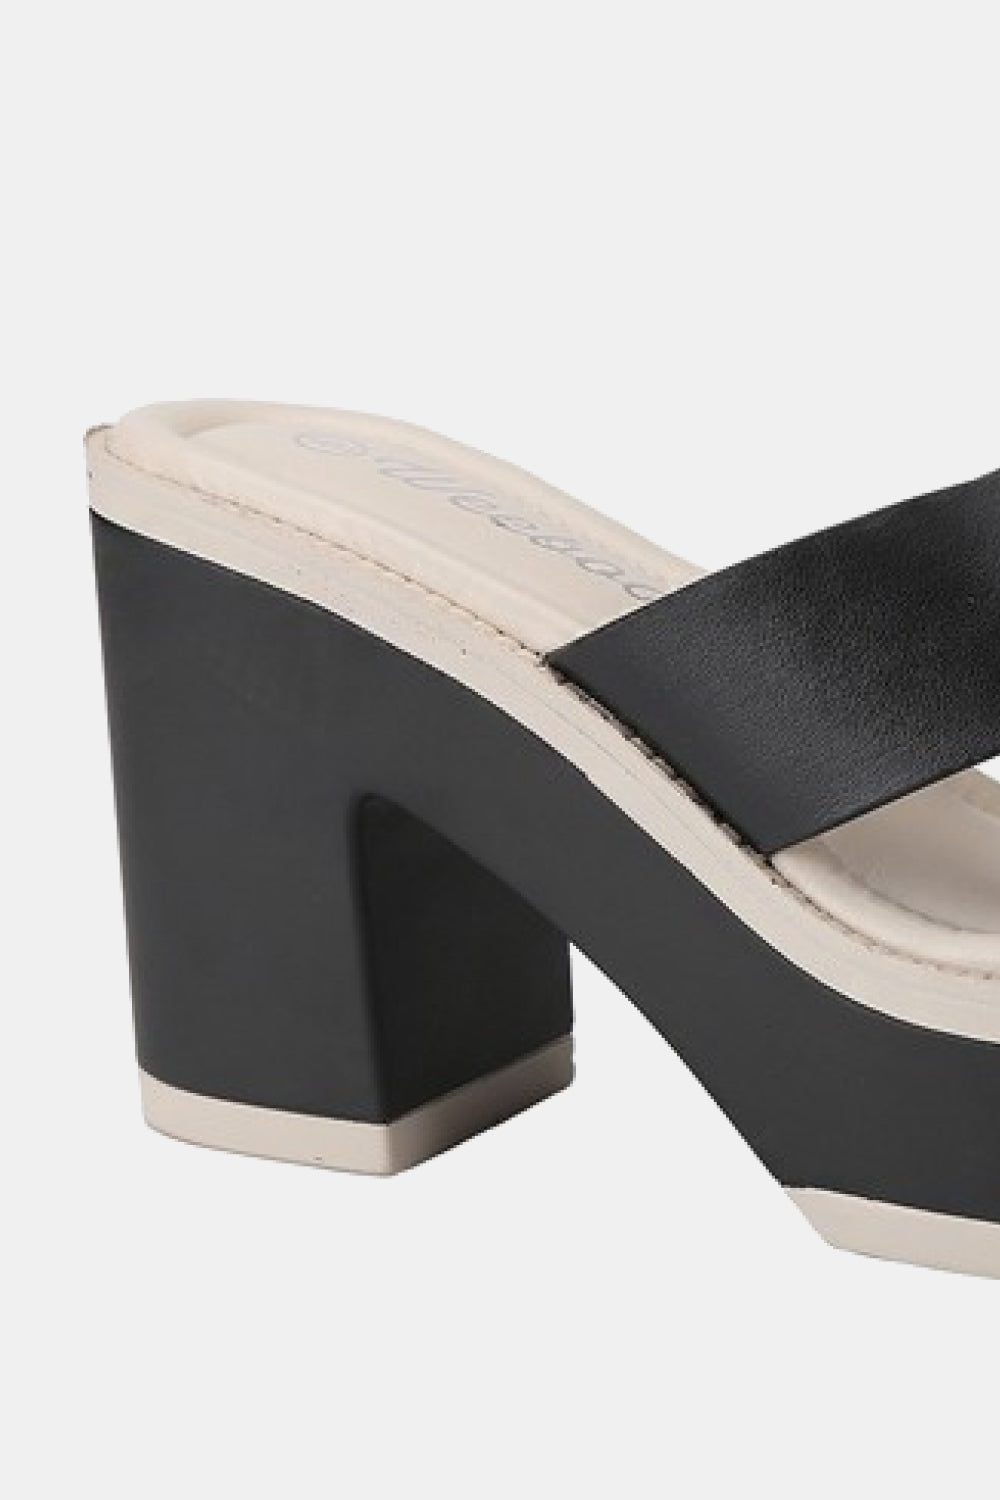 Maddie Contrast Platform Sandals in Black